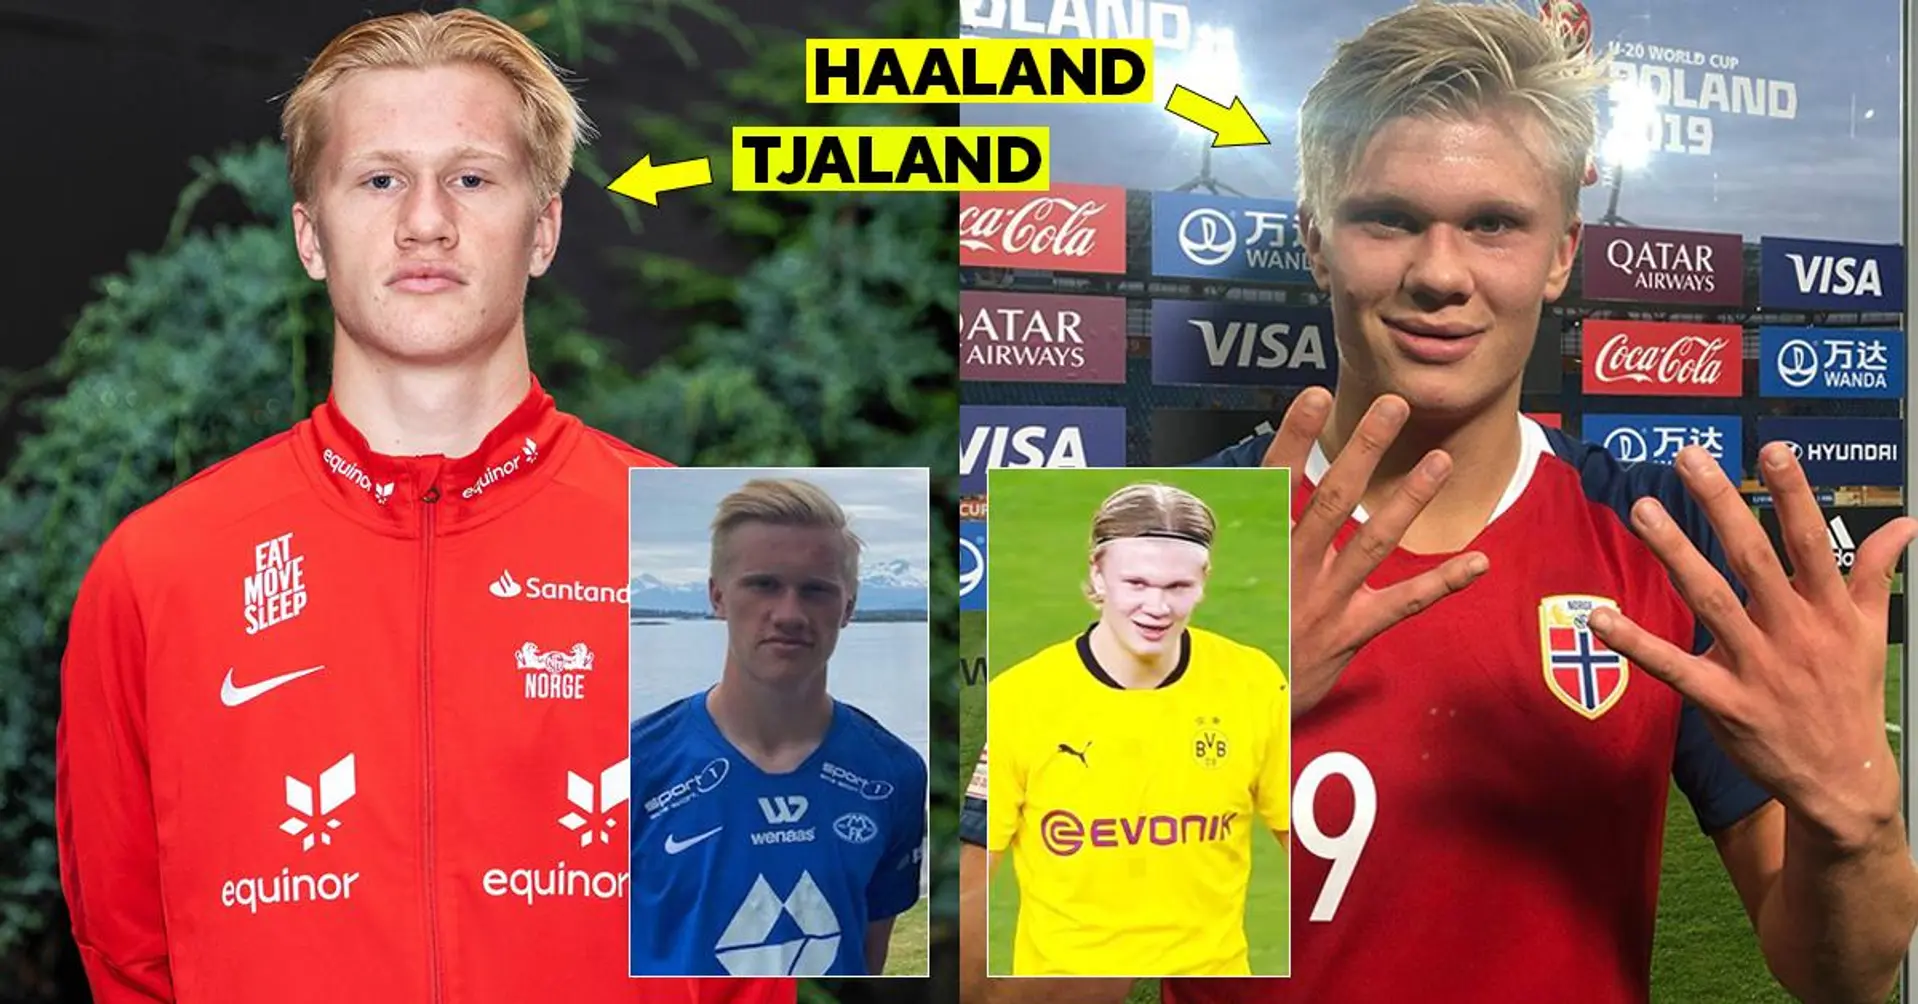 Le cousin d'Erling Haaland, âgé de 17 ans, a un record de buts fou en Norvège - il est déjà nommé "Goal Machine"